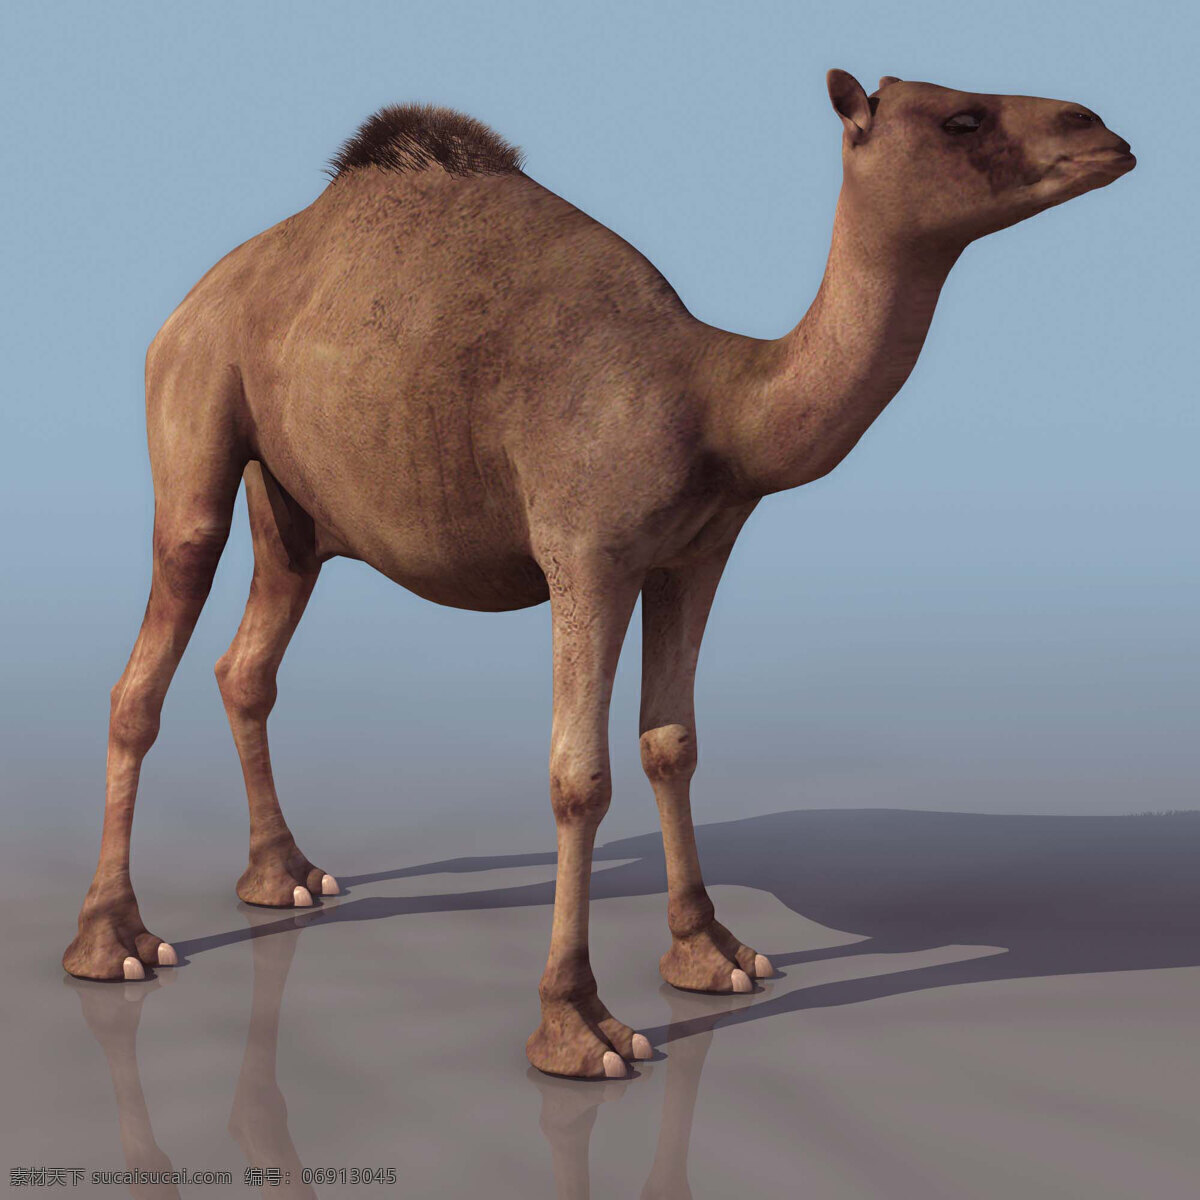 有贴图 dromedar 沙漠 动物 单峰驼 高模 动物模型 陆生动物 3d模型素材 动植物模型